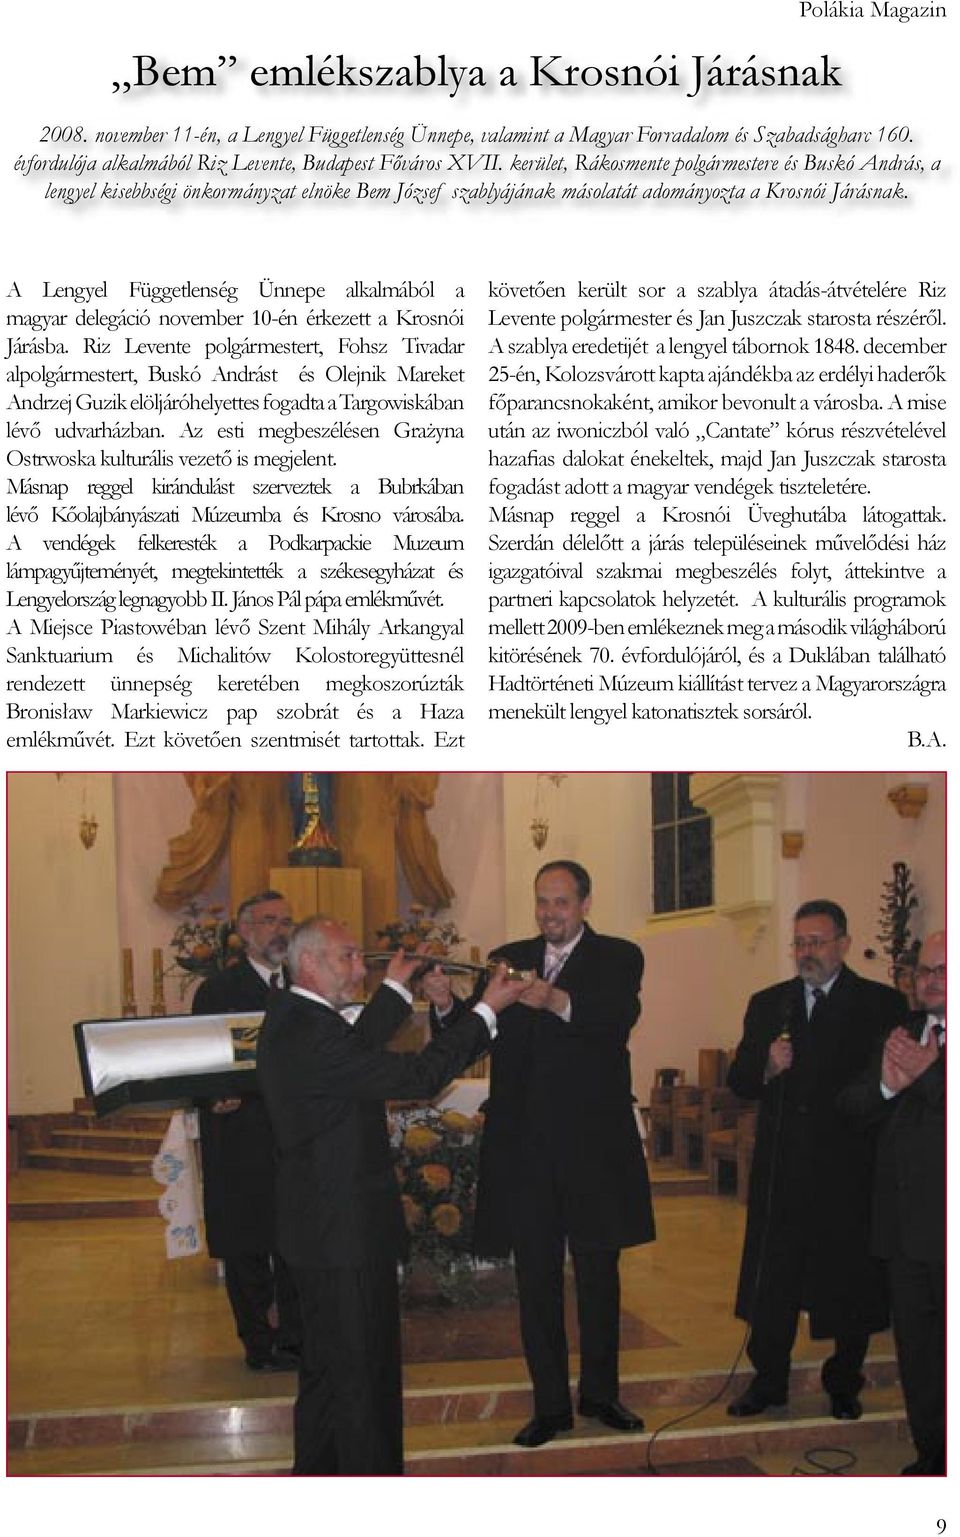 kerület, Rákosmente polgármestere és Buskó András, a lengyel kisebbségi önkormányzat elnöke Bem József szablyájának másolatát adományozta a Krosnói Járásnak.